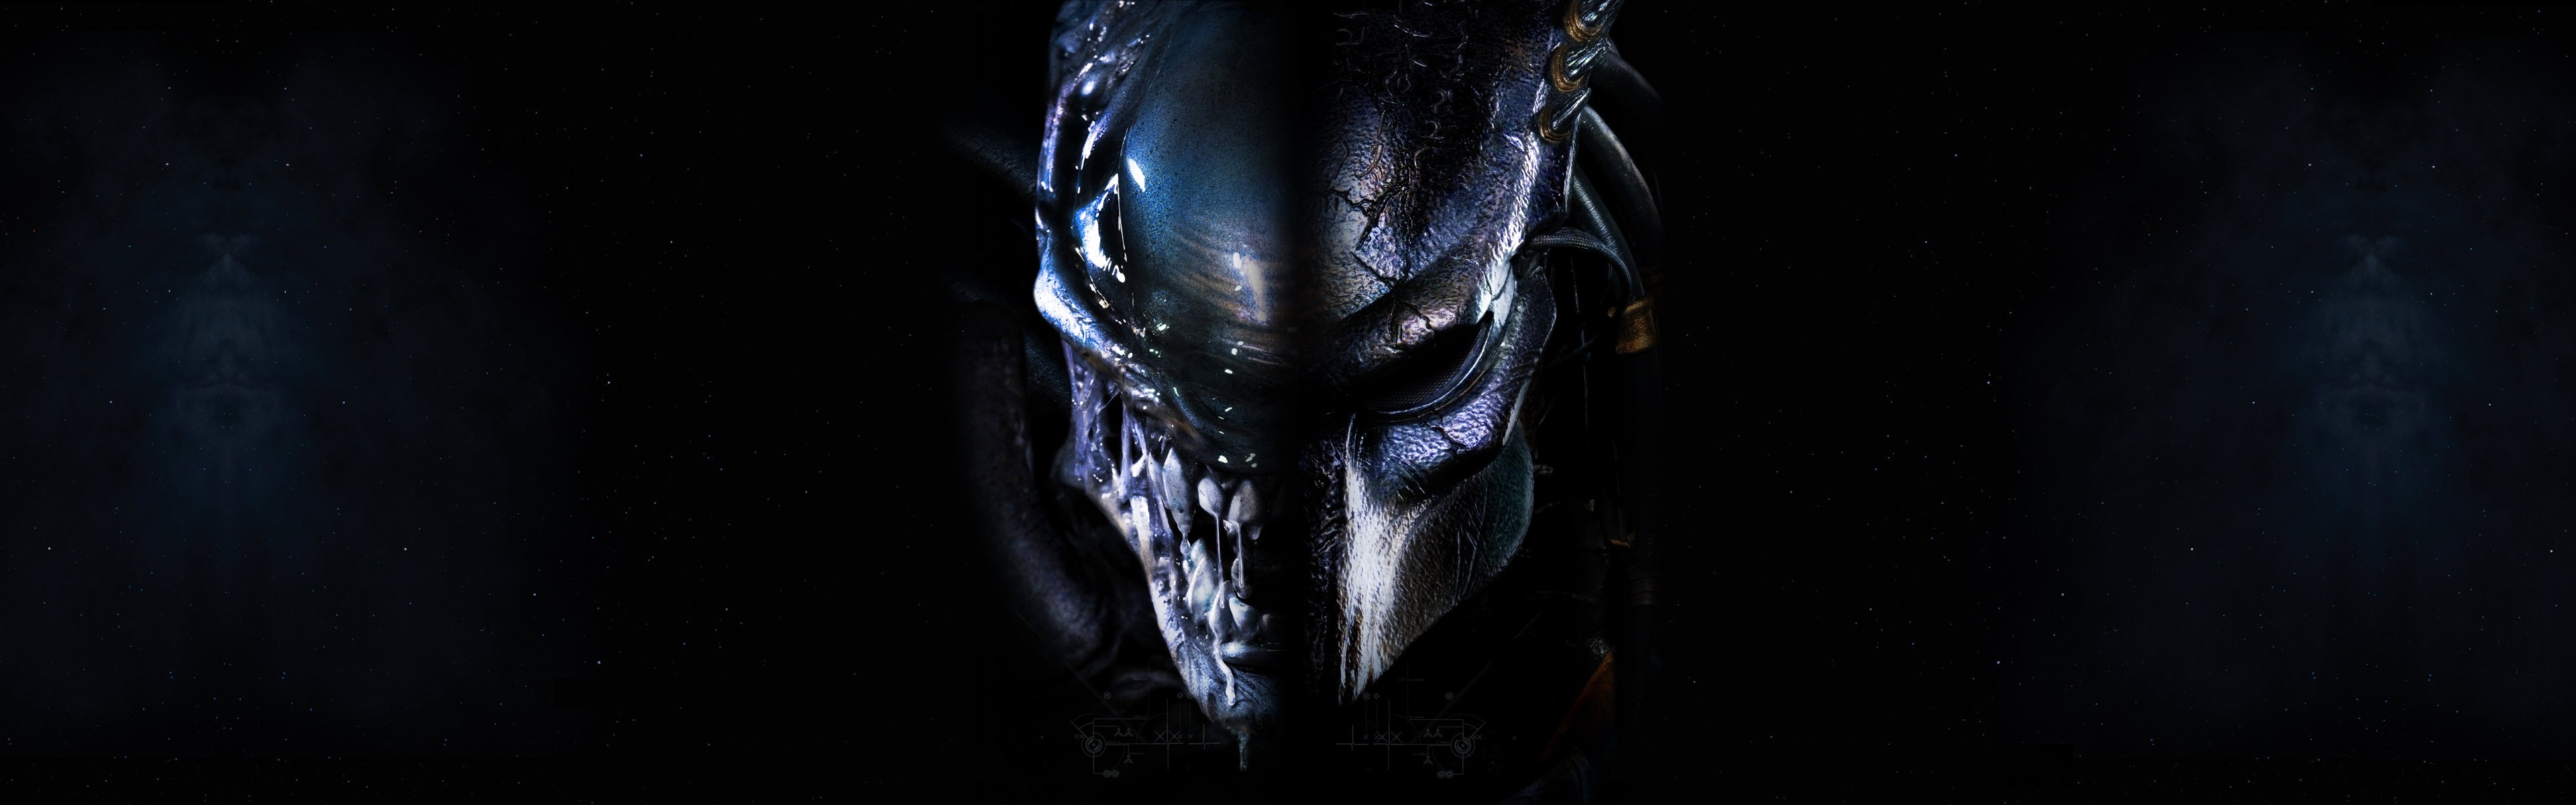 Movie AVP Alien Vs Predator 3840x1200